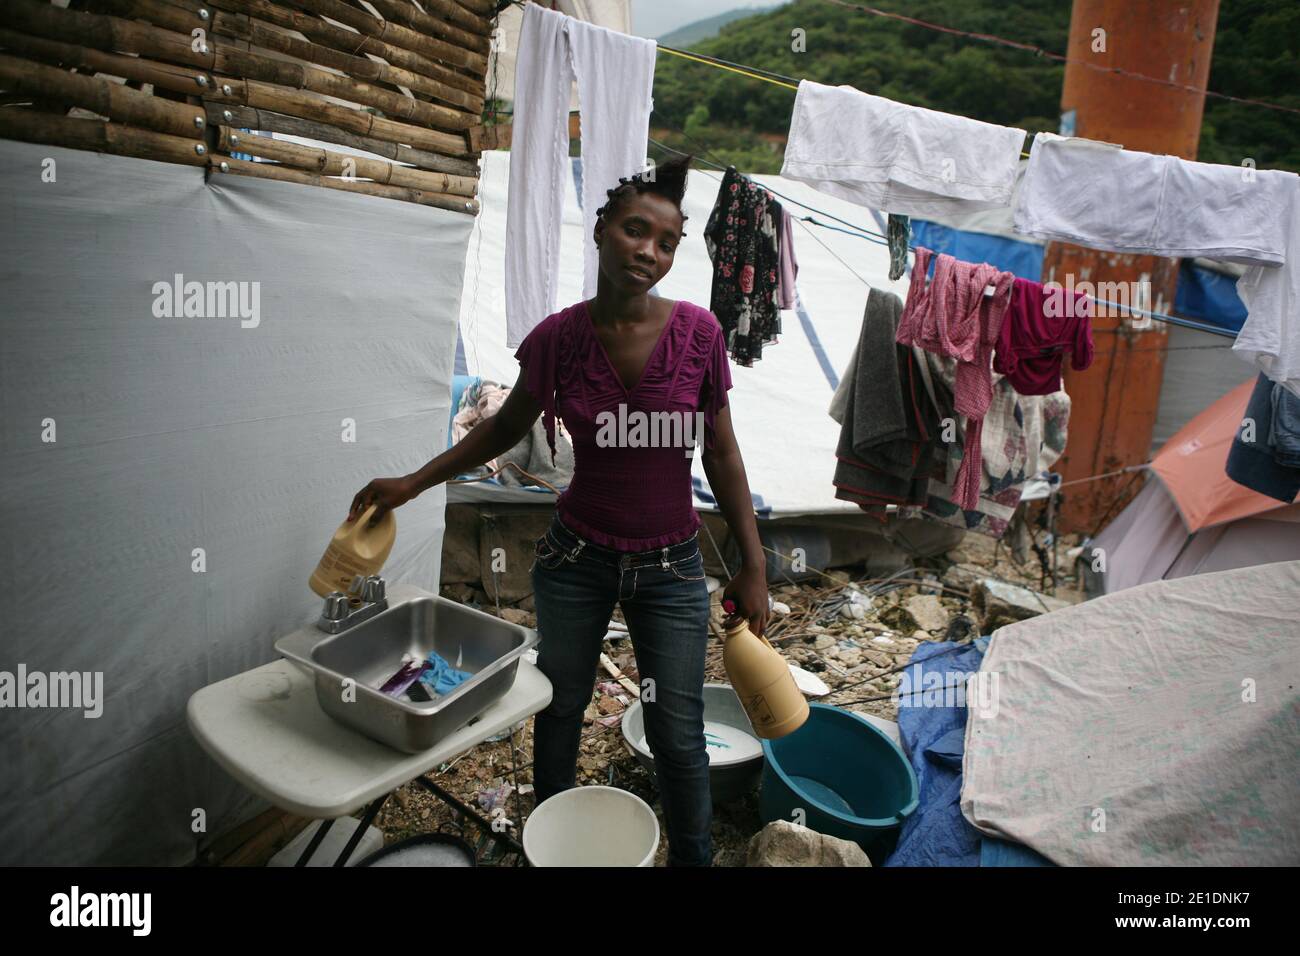 Johanna, 22 ans, a installé un salon de beauté dans le camp avec ses deux sœurs. Ils essaient de continuer avec cette nouvelle activité avec ce qu'ils ont trouvé. Dans ce lavabo, ils se lavent les cheveux des clients. Et ils essaient d'aider leurs amis à rester assez en dehors de la situation de désespoir dans les camps. Port-au-Prince, Haïti le 19 décembre 2010. Photo par Axelle de russe/ABACAPRESS.COM Banque D'Images